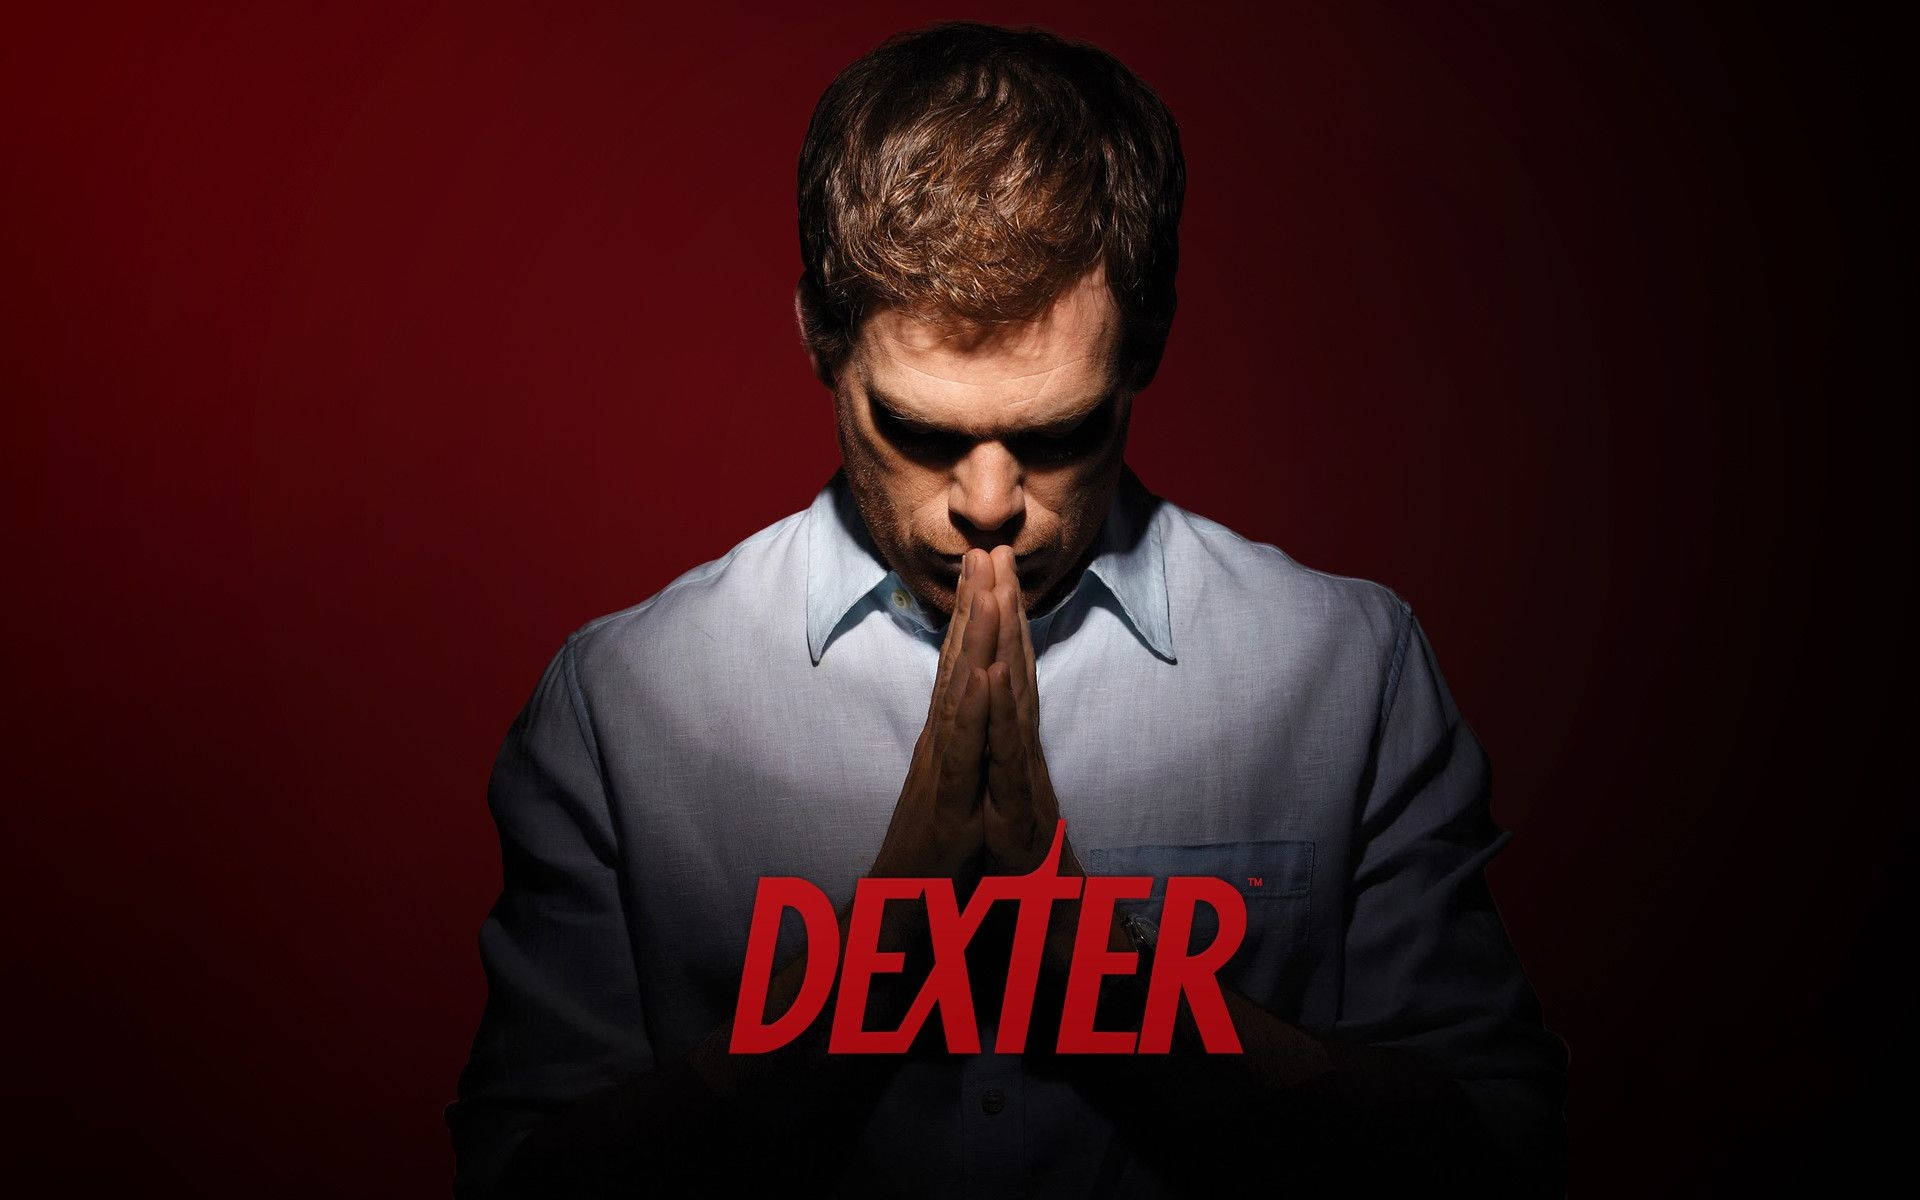 Dexter Actor Michael C. Hall Background